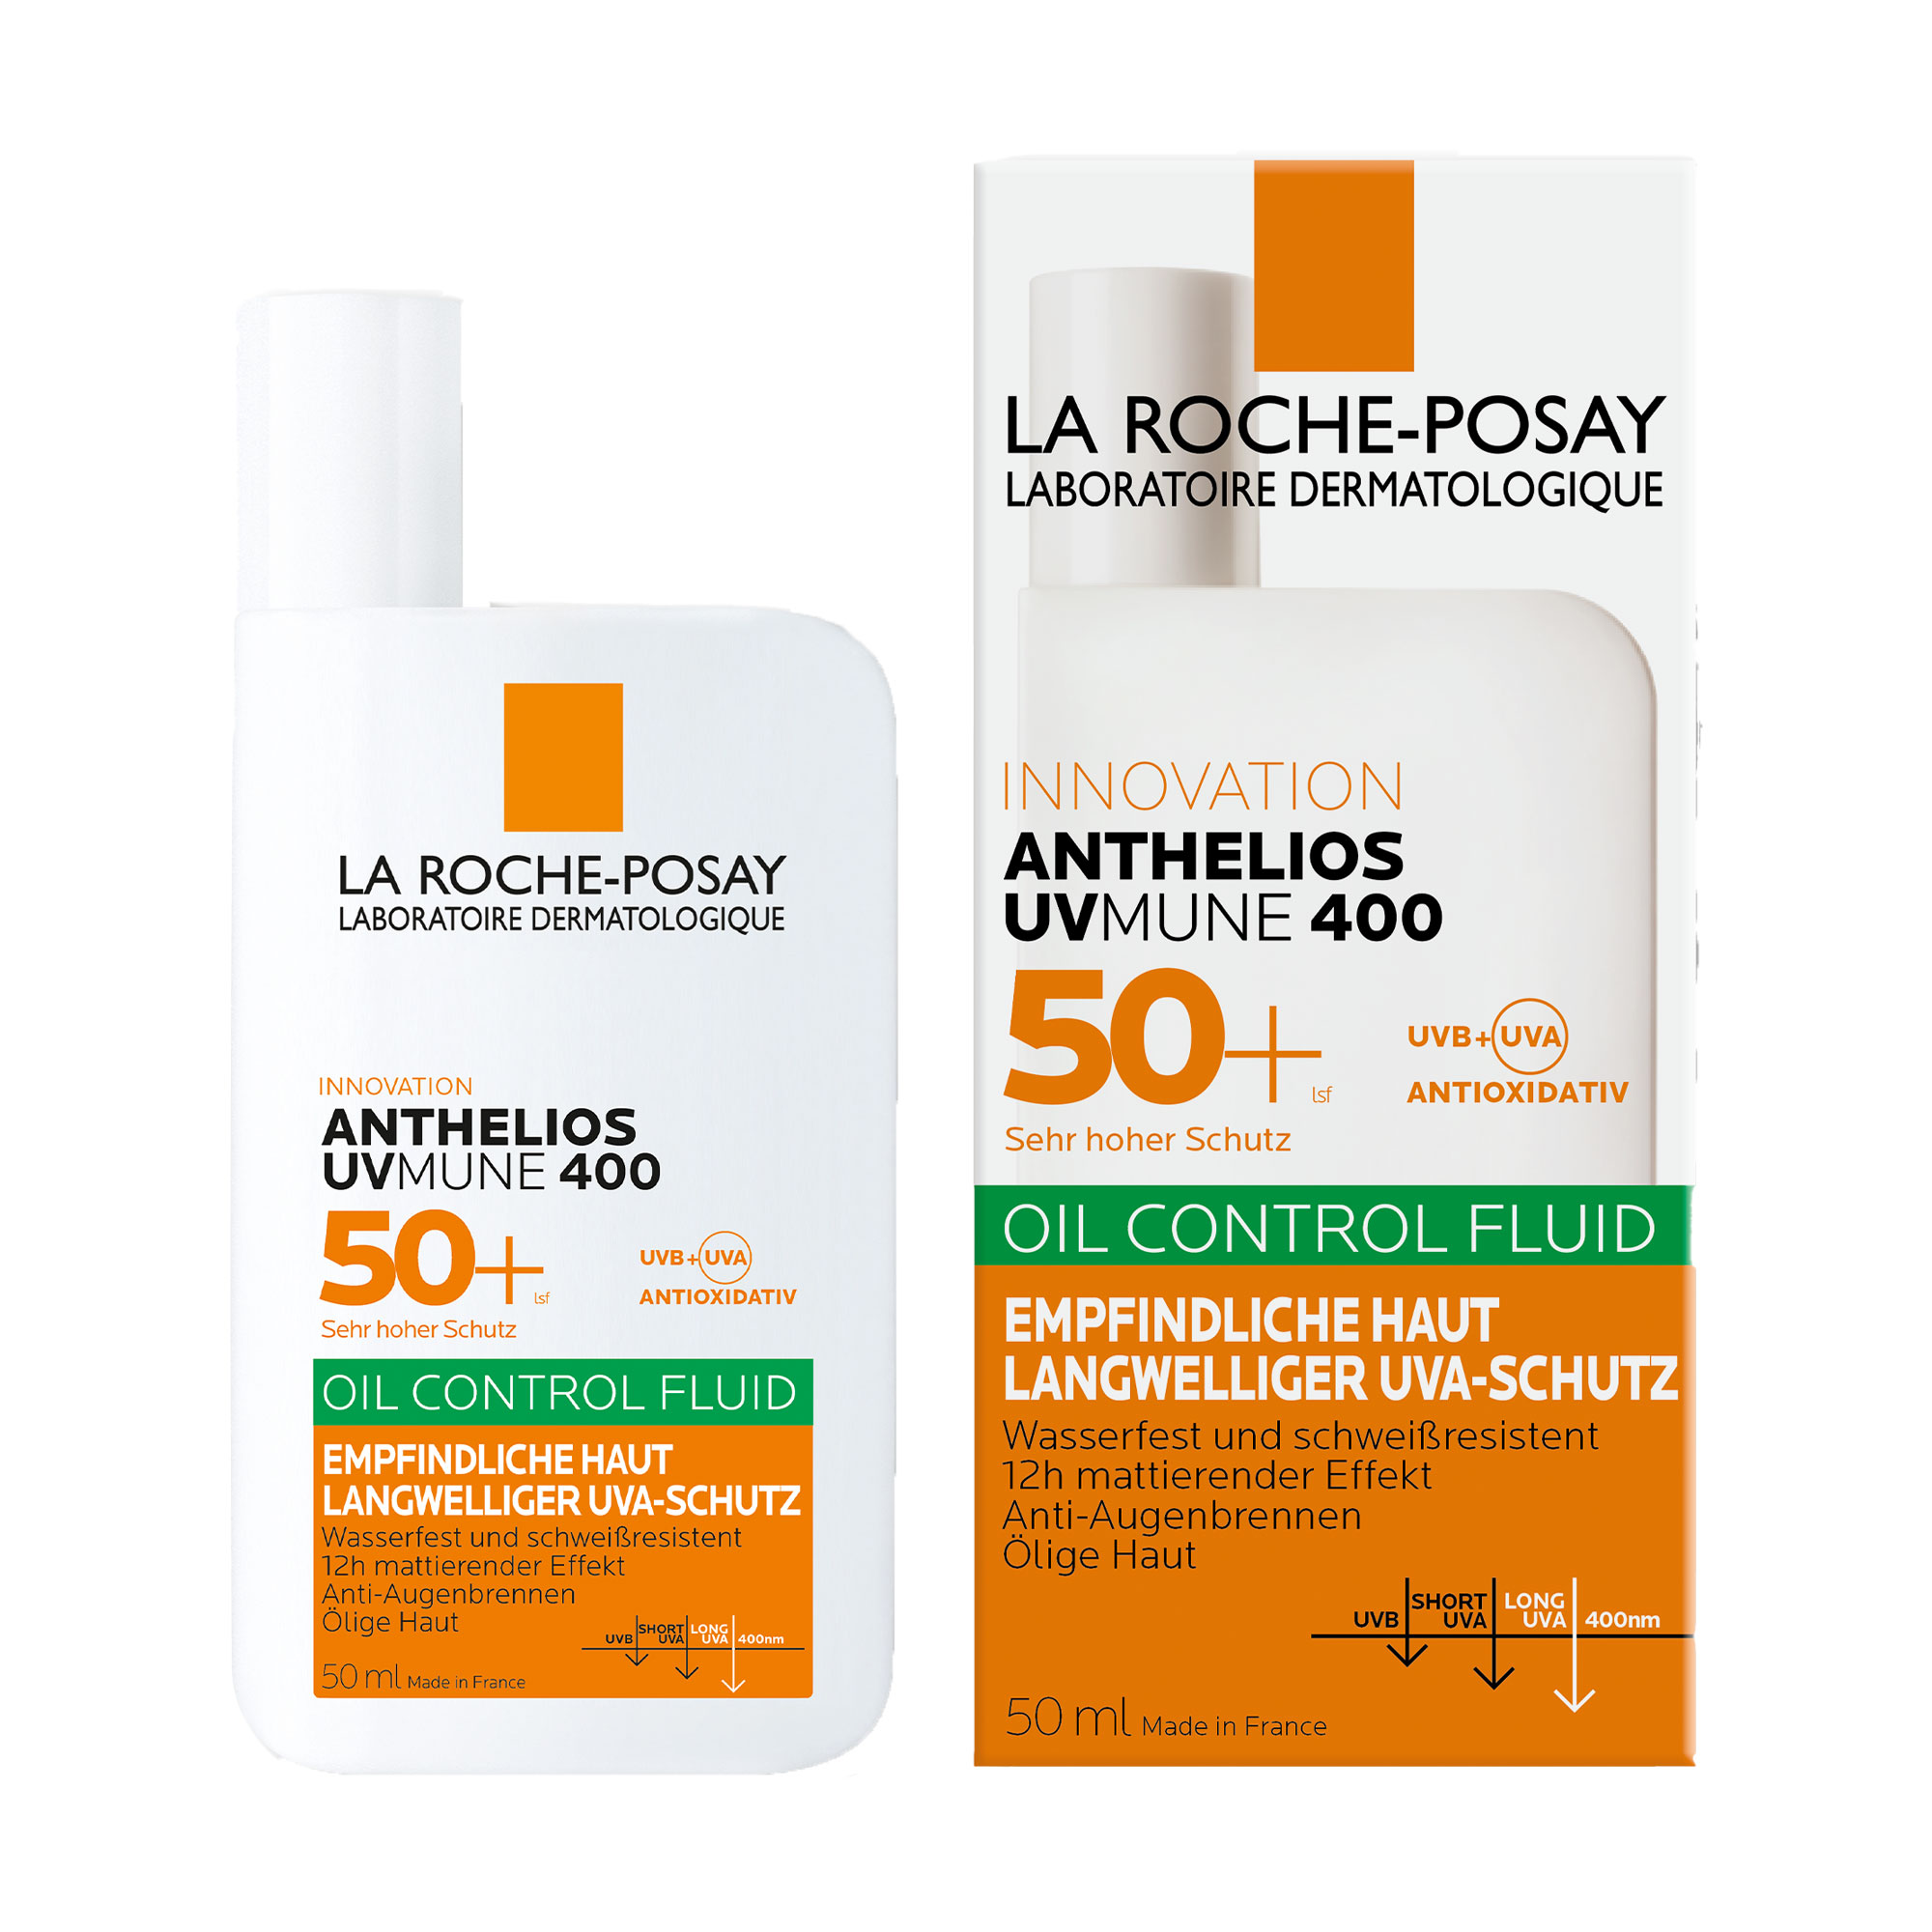 Sonnenschutz für empfindliche Haut mit sehr hohem UV-Schutz LSF 50+. Für ölige Haut geeignet.